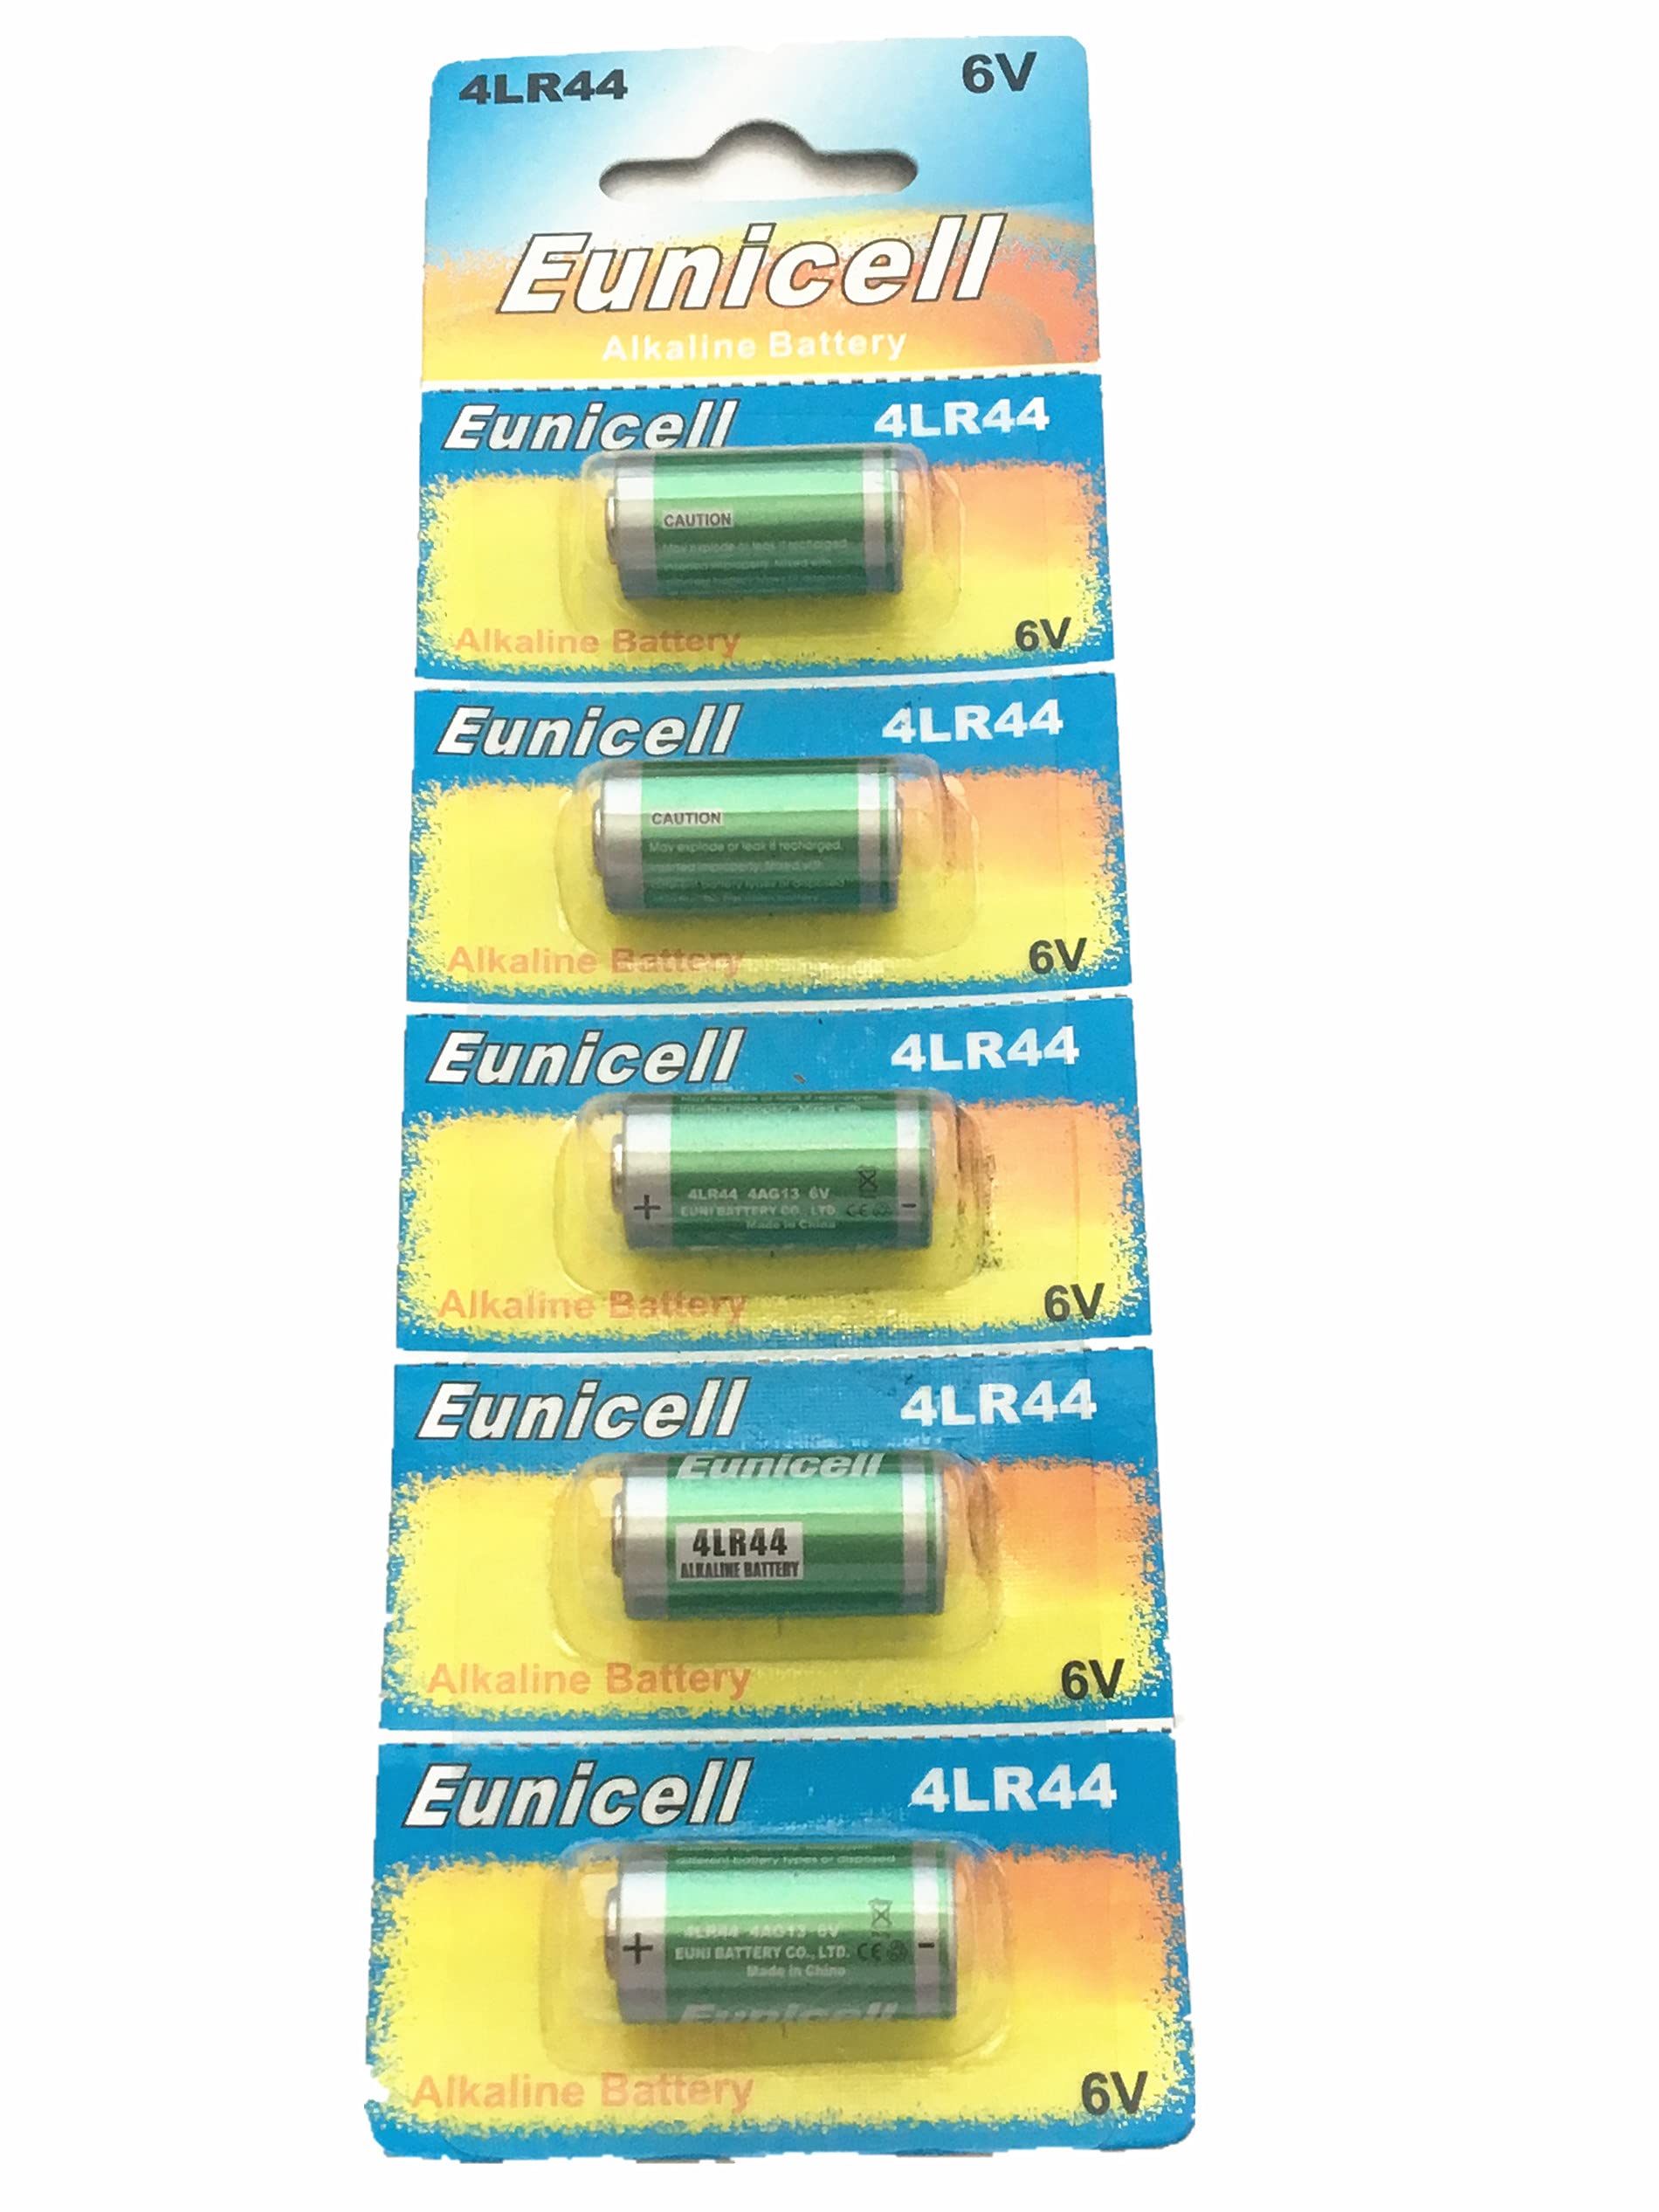 Hillflower 1000 Piece 4LR44 PX28A A544 476A K28A L1325 Card 0% Hg 6V Long Duration Alkaline Battery